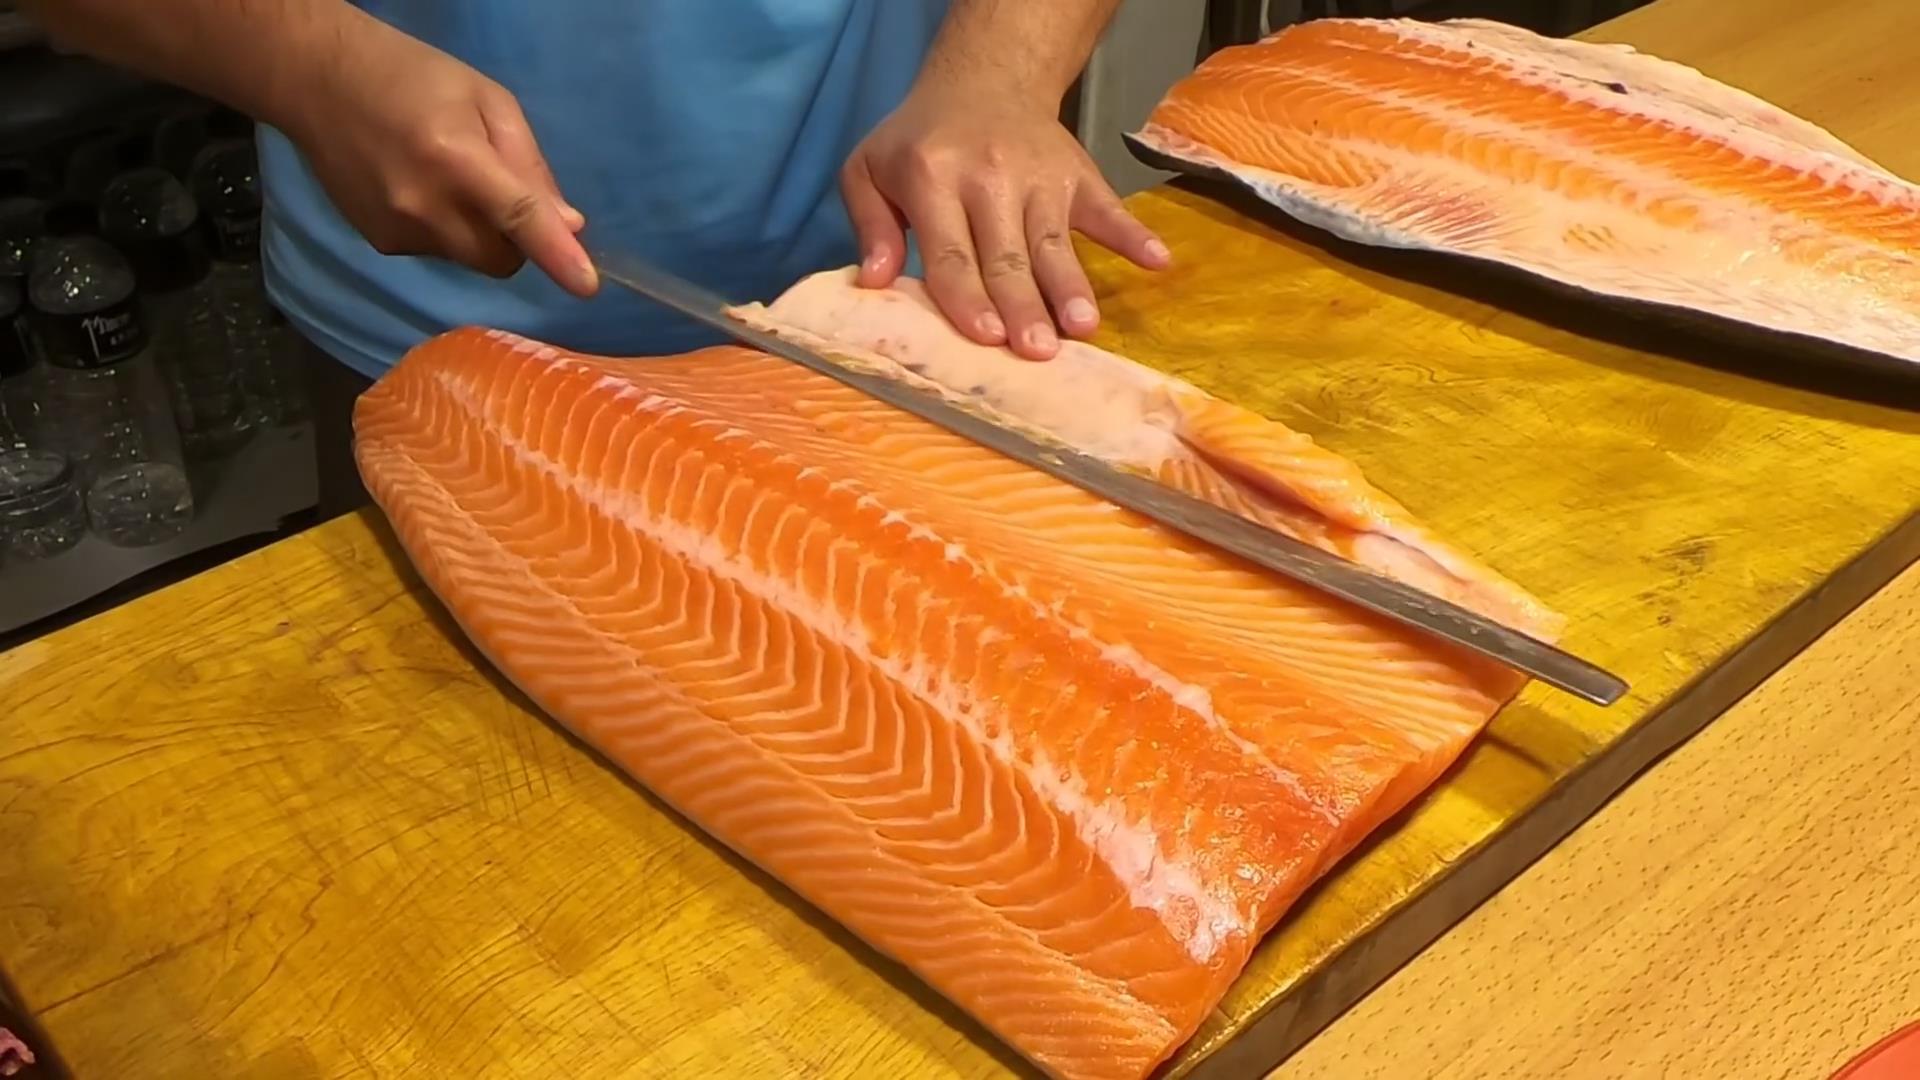 厨师处理整条挪威大西洋鲑鱼,三文鱼快刀分割切段做刺身!